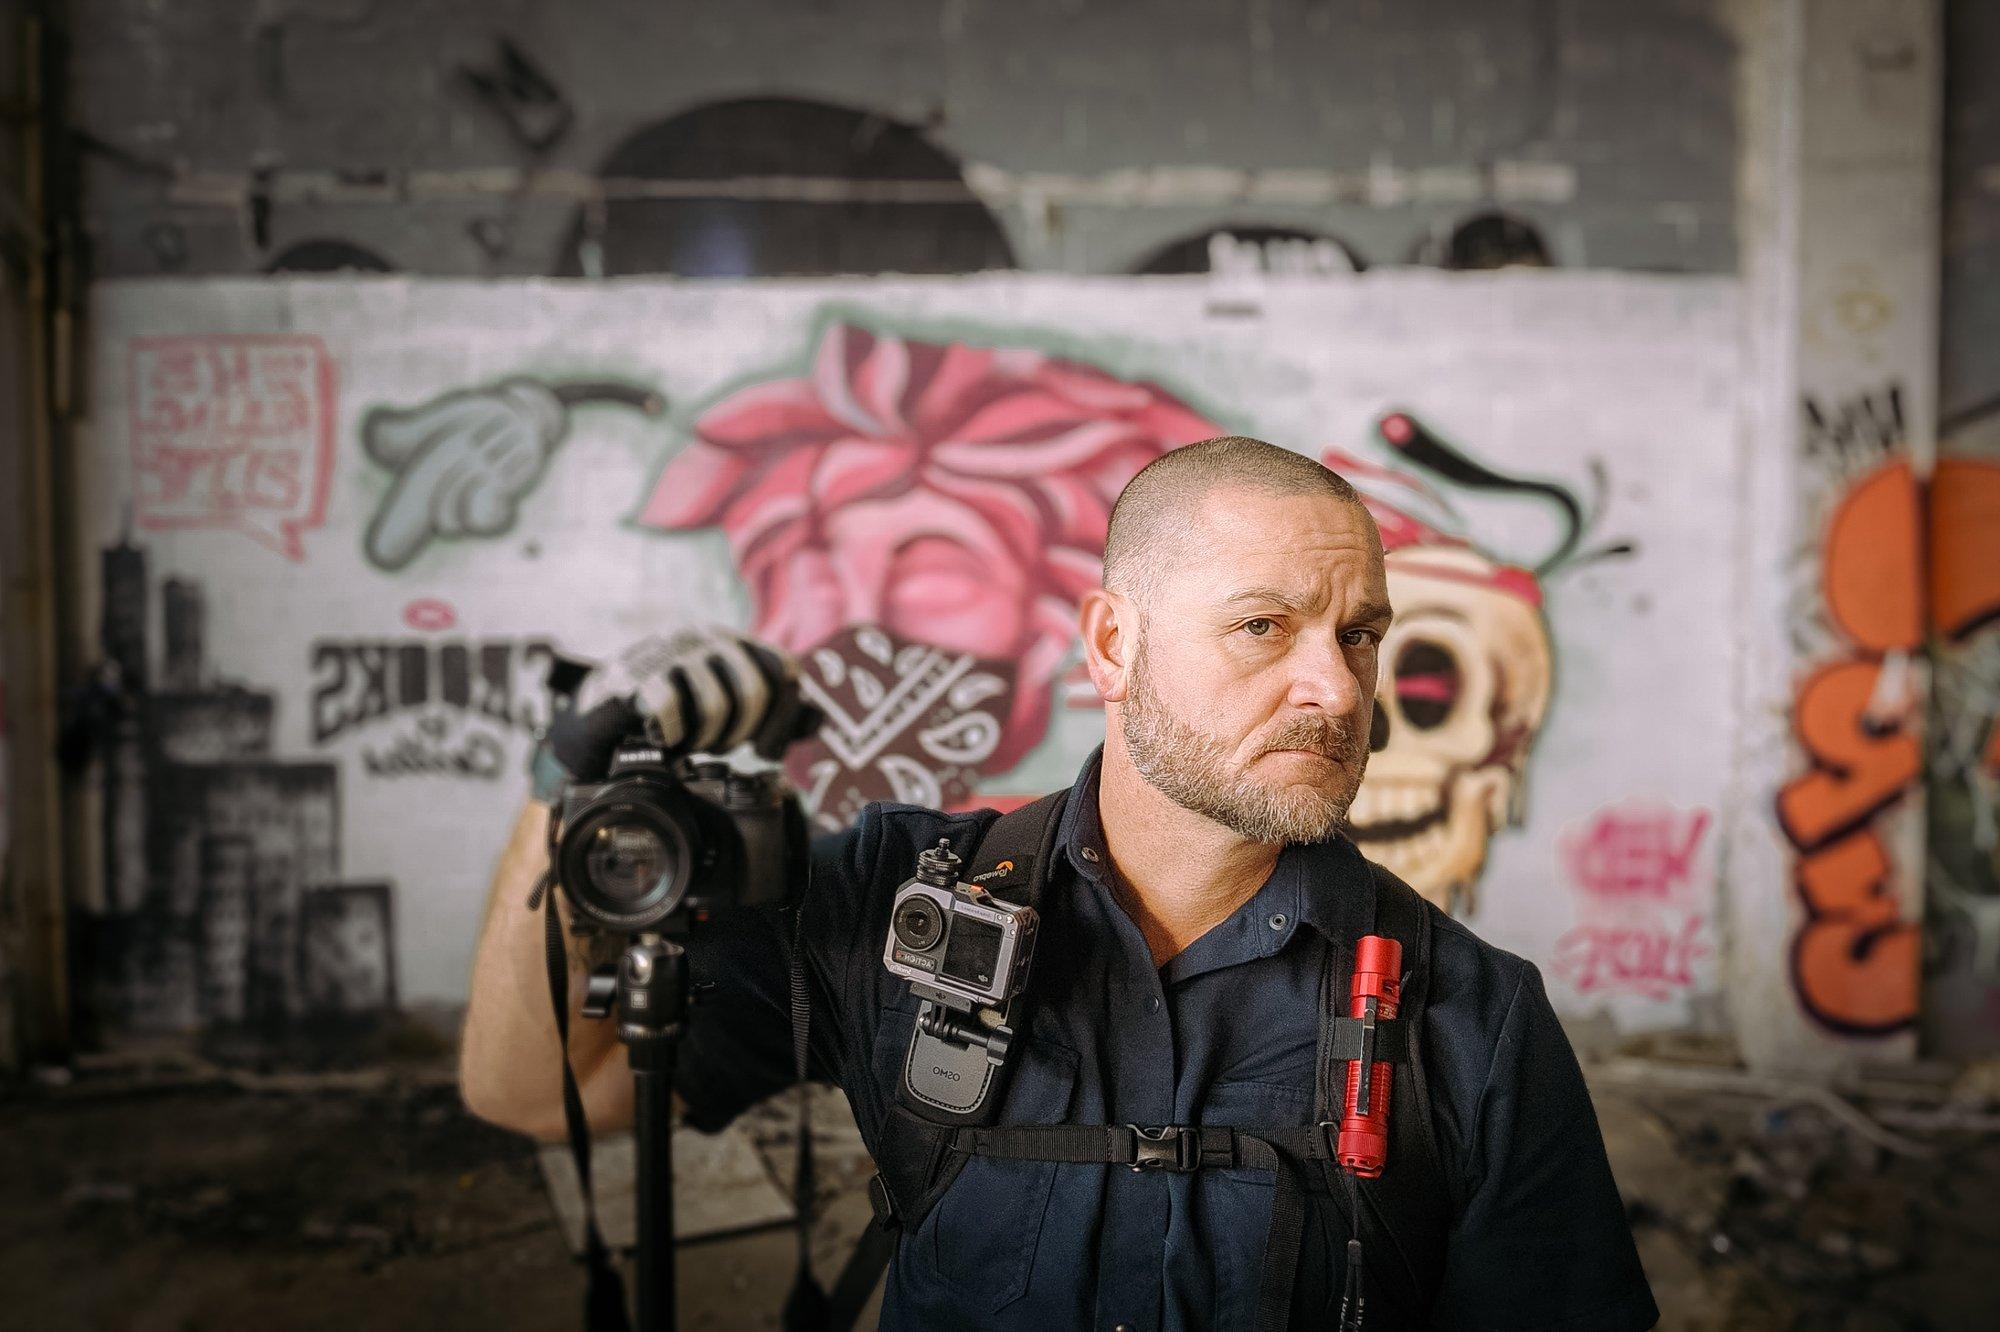 Dave Conlon, an urban explorer from Ontario, follows a strict code of ethics as he photographs deserted sites